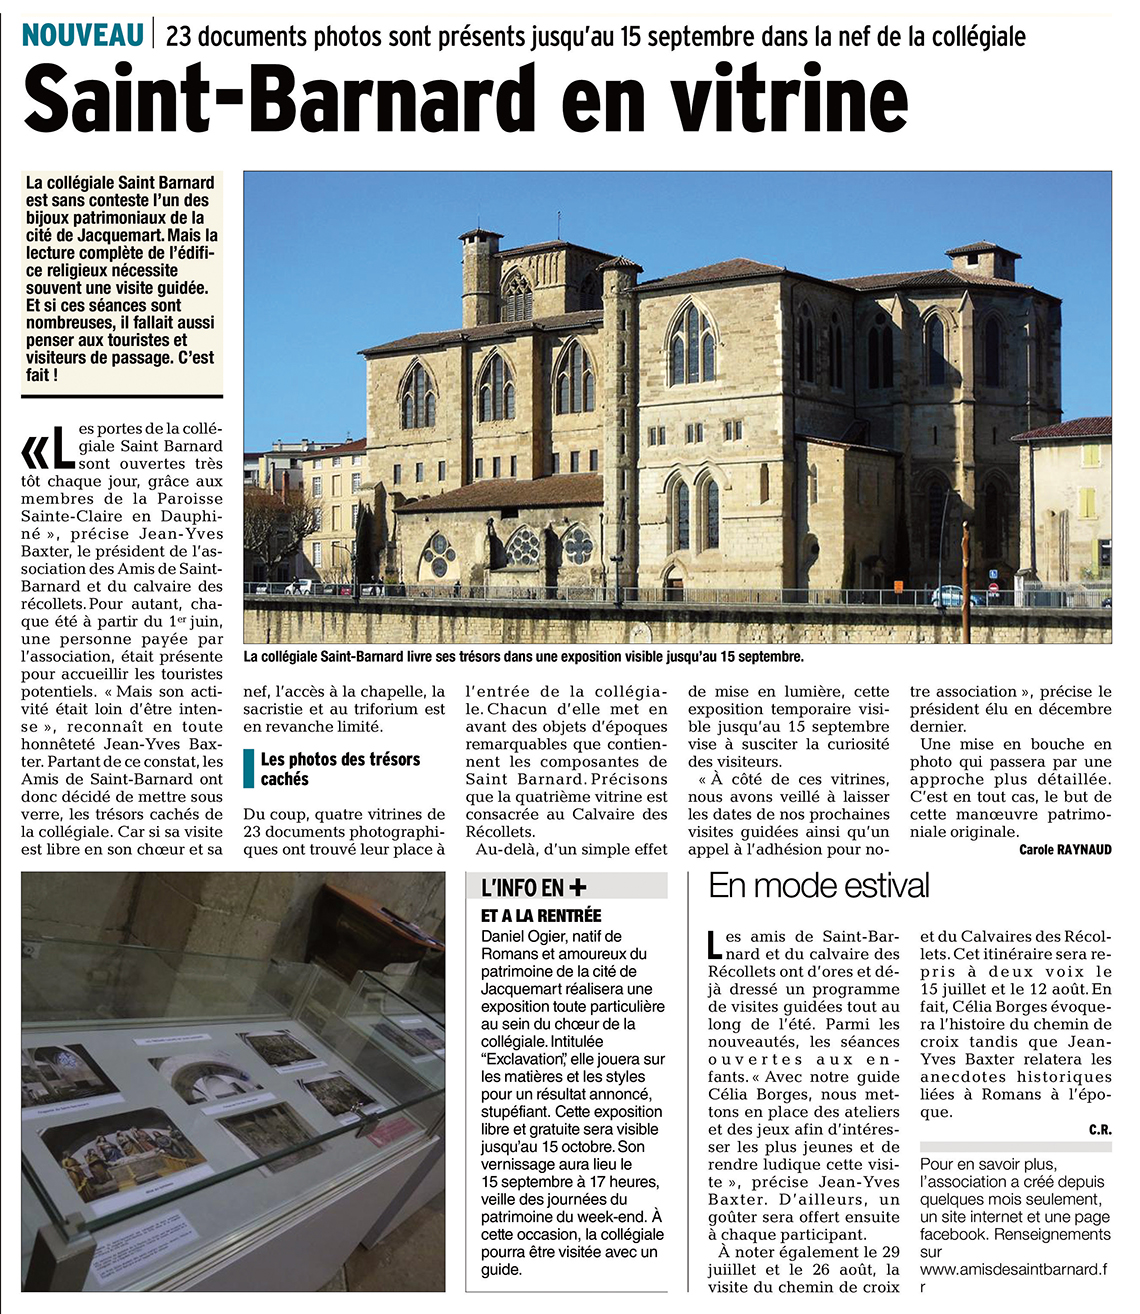 Le Dauphiné Libéré, 11 juin 2017 : Saint-Barnard en vitrine